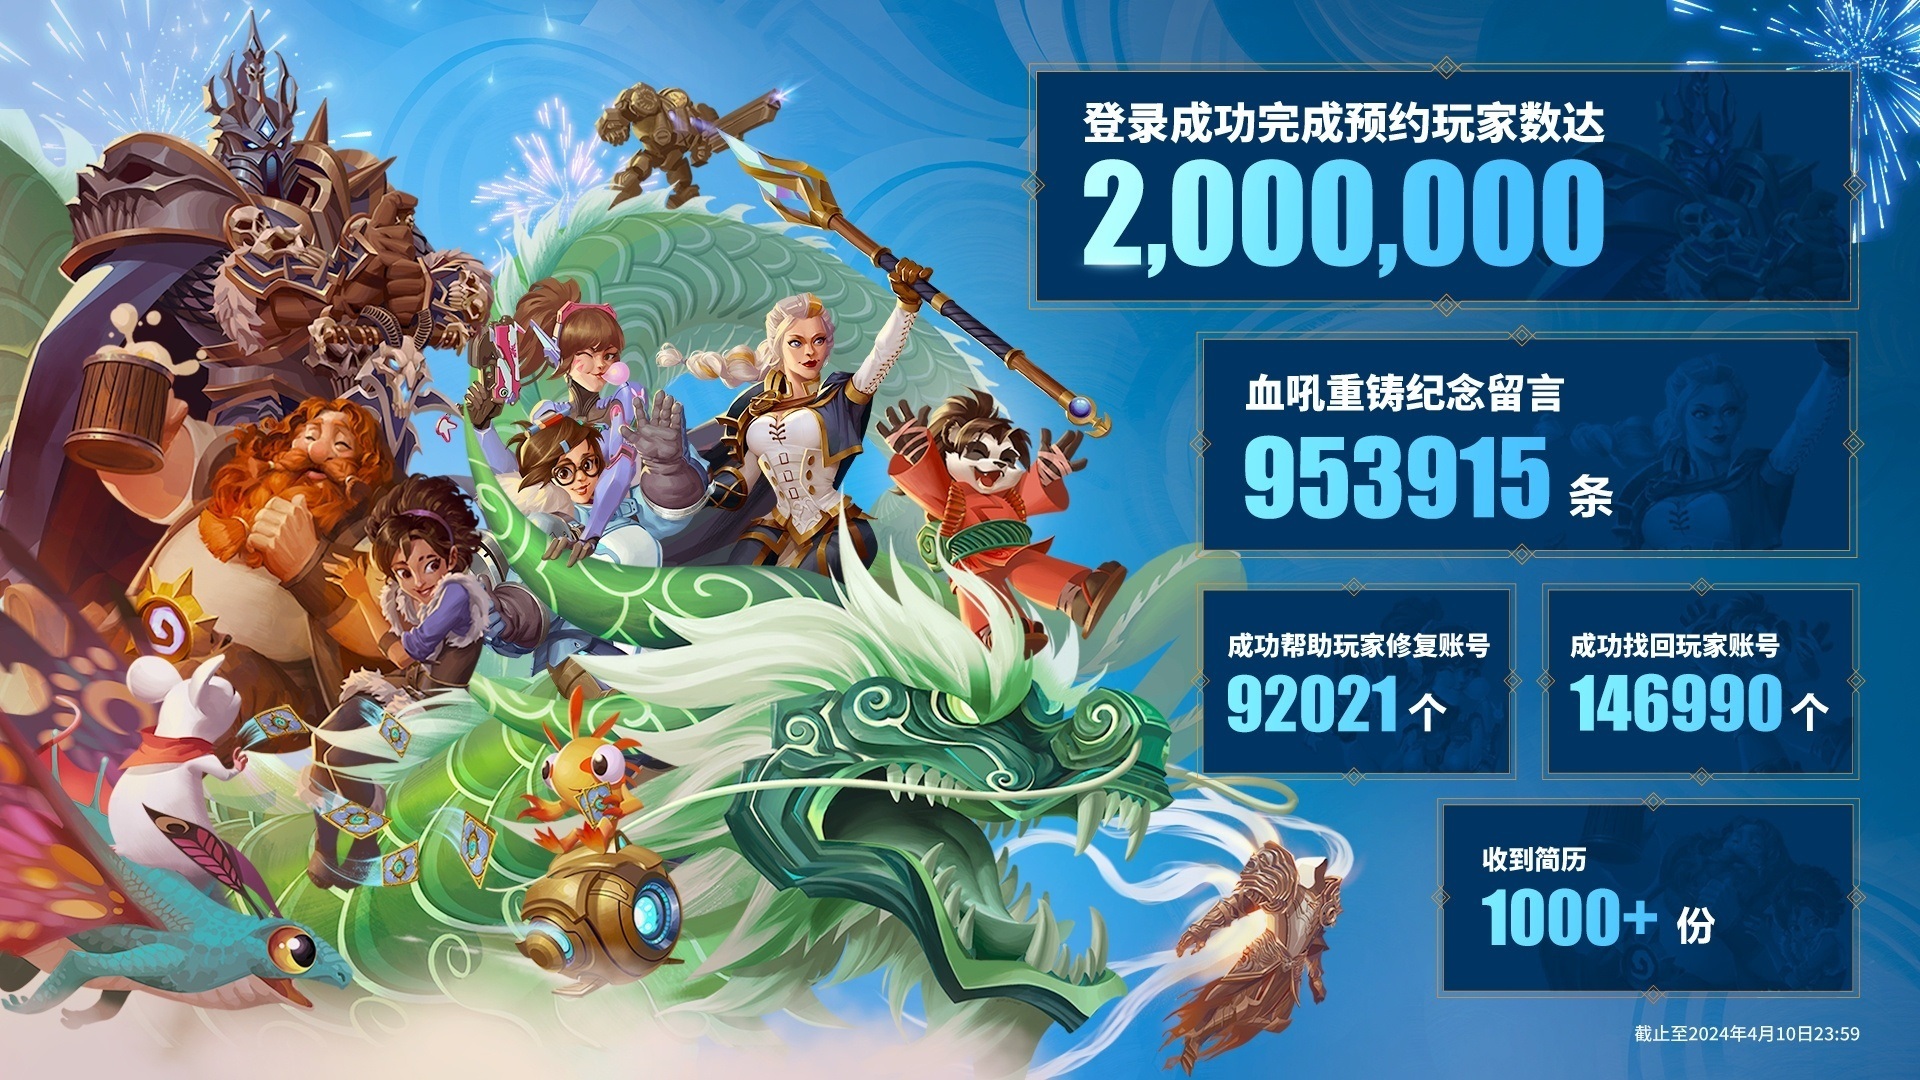 World of Warcraft-ի չինական սերվերում 2 օրում գրանցվել է 2 մլն խաղացող